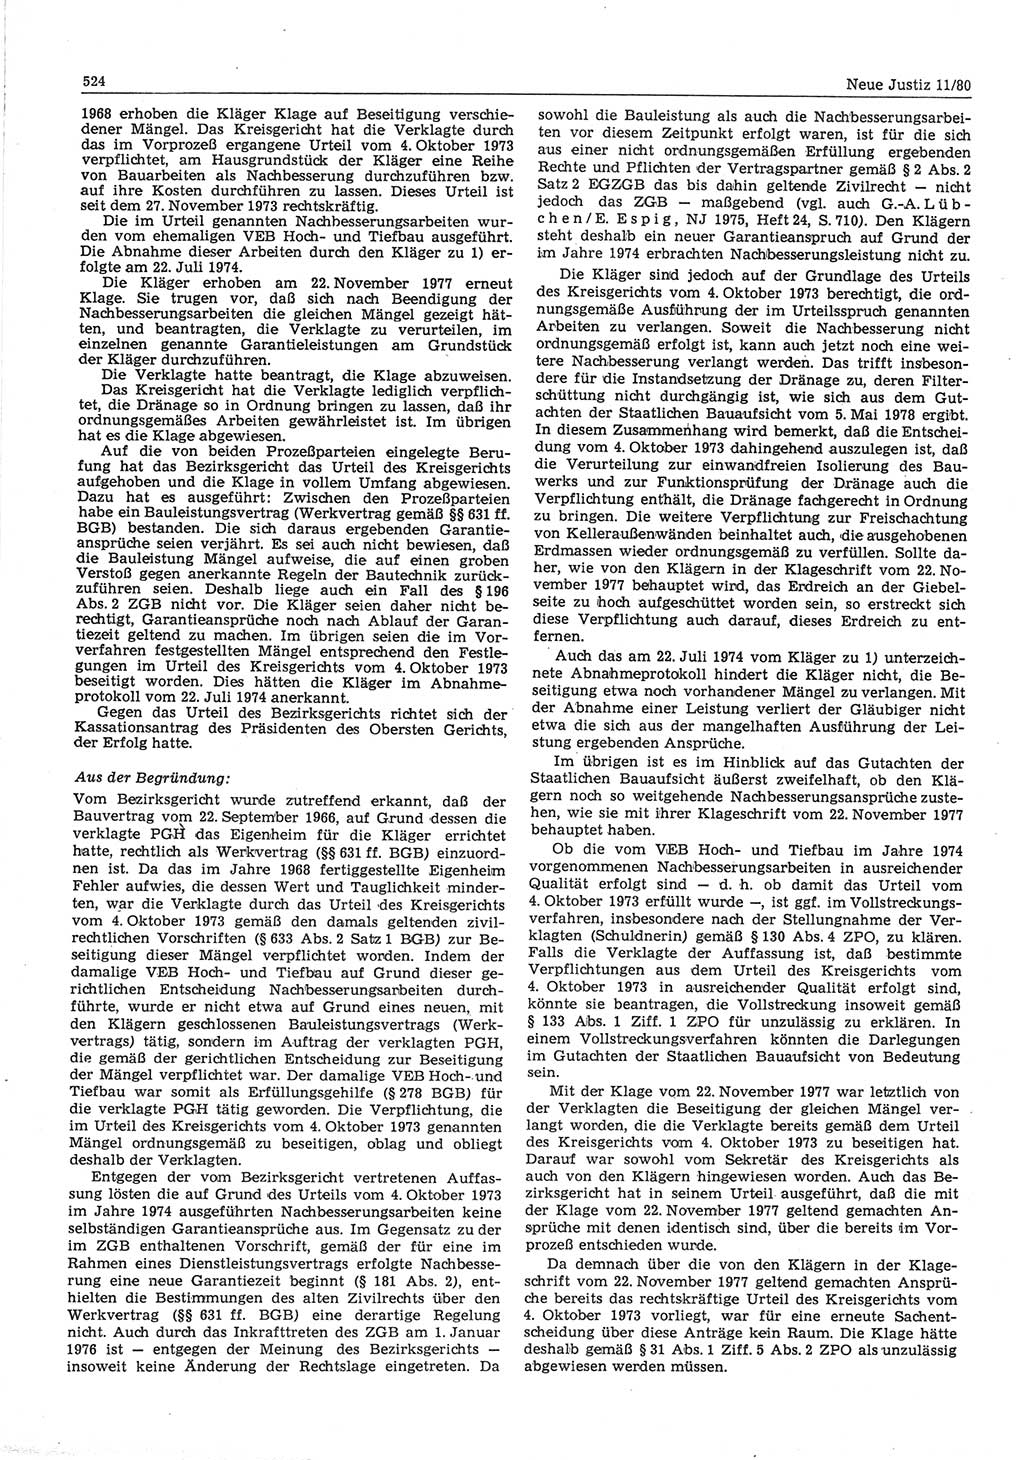 Neue Justiz (NJ), Zeitschrift für sozialistisches Recht und Gesetzlichkeit [Deutsche Demokratische Republik (DDR)], 34. Jahrgang 1980, Seite 524 (NJ DDR 1980, S. 524)